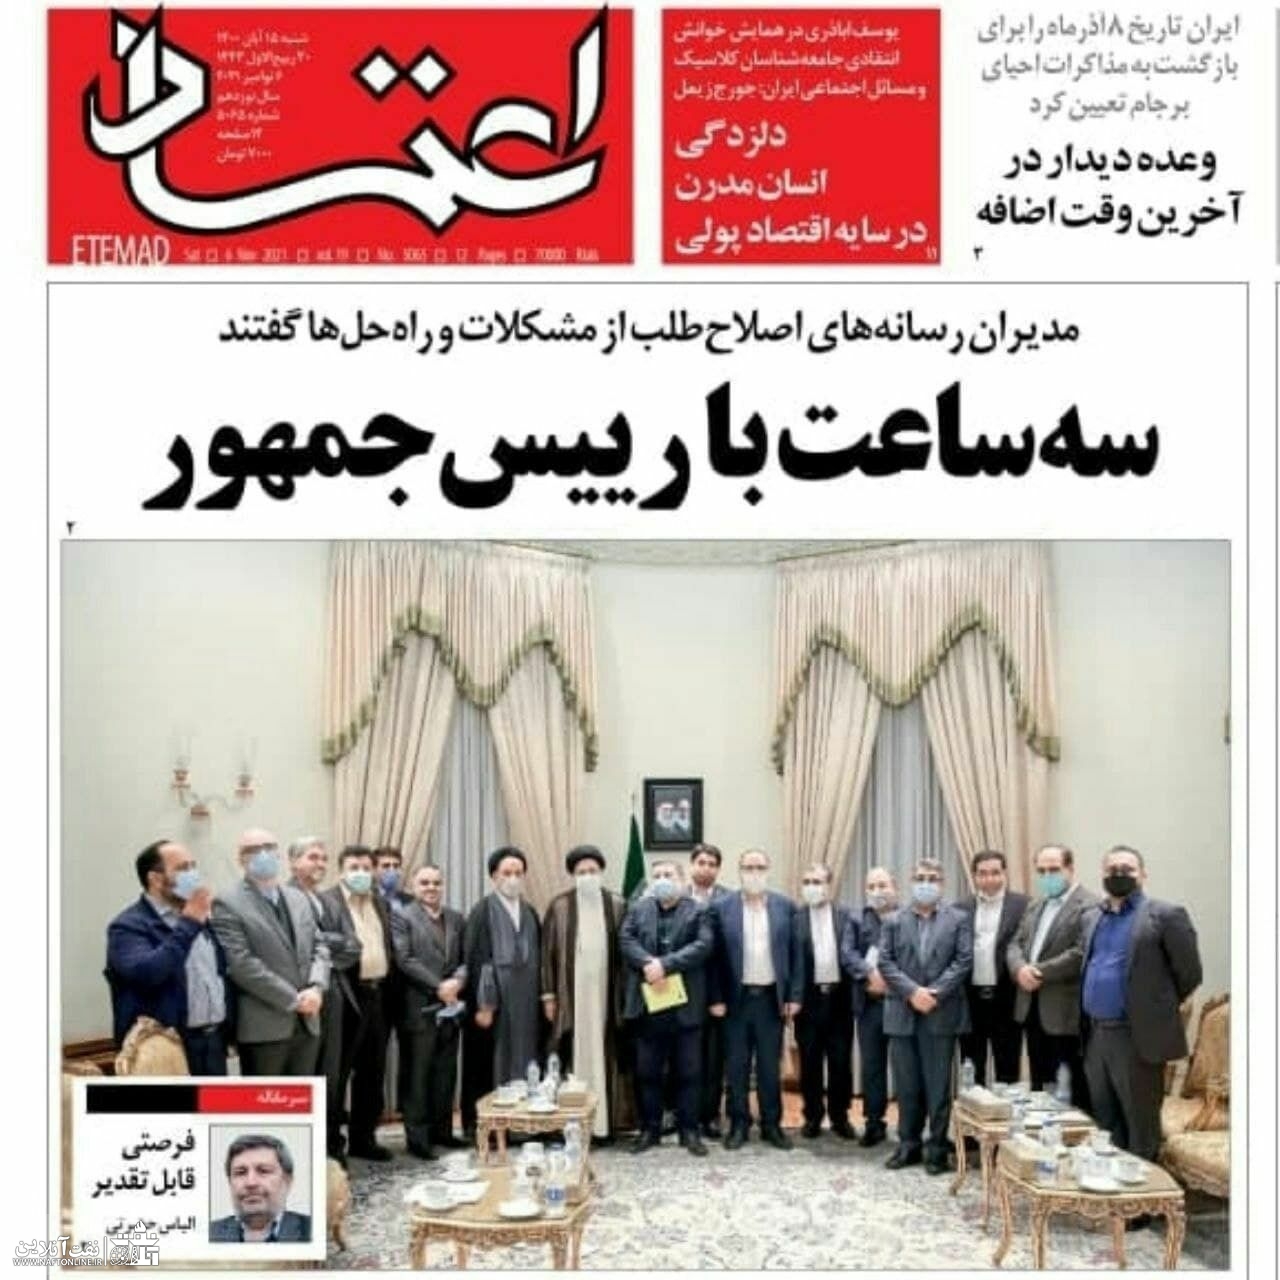 جلسه با رسانه های اصلاح طلب | روزنامه اعتماد